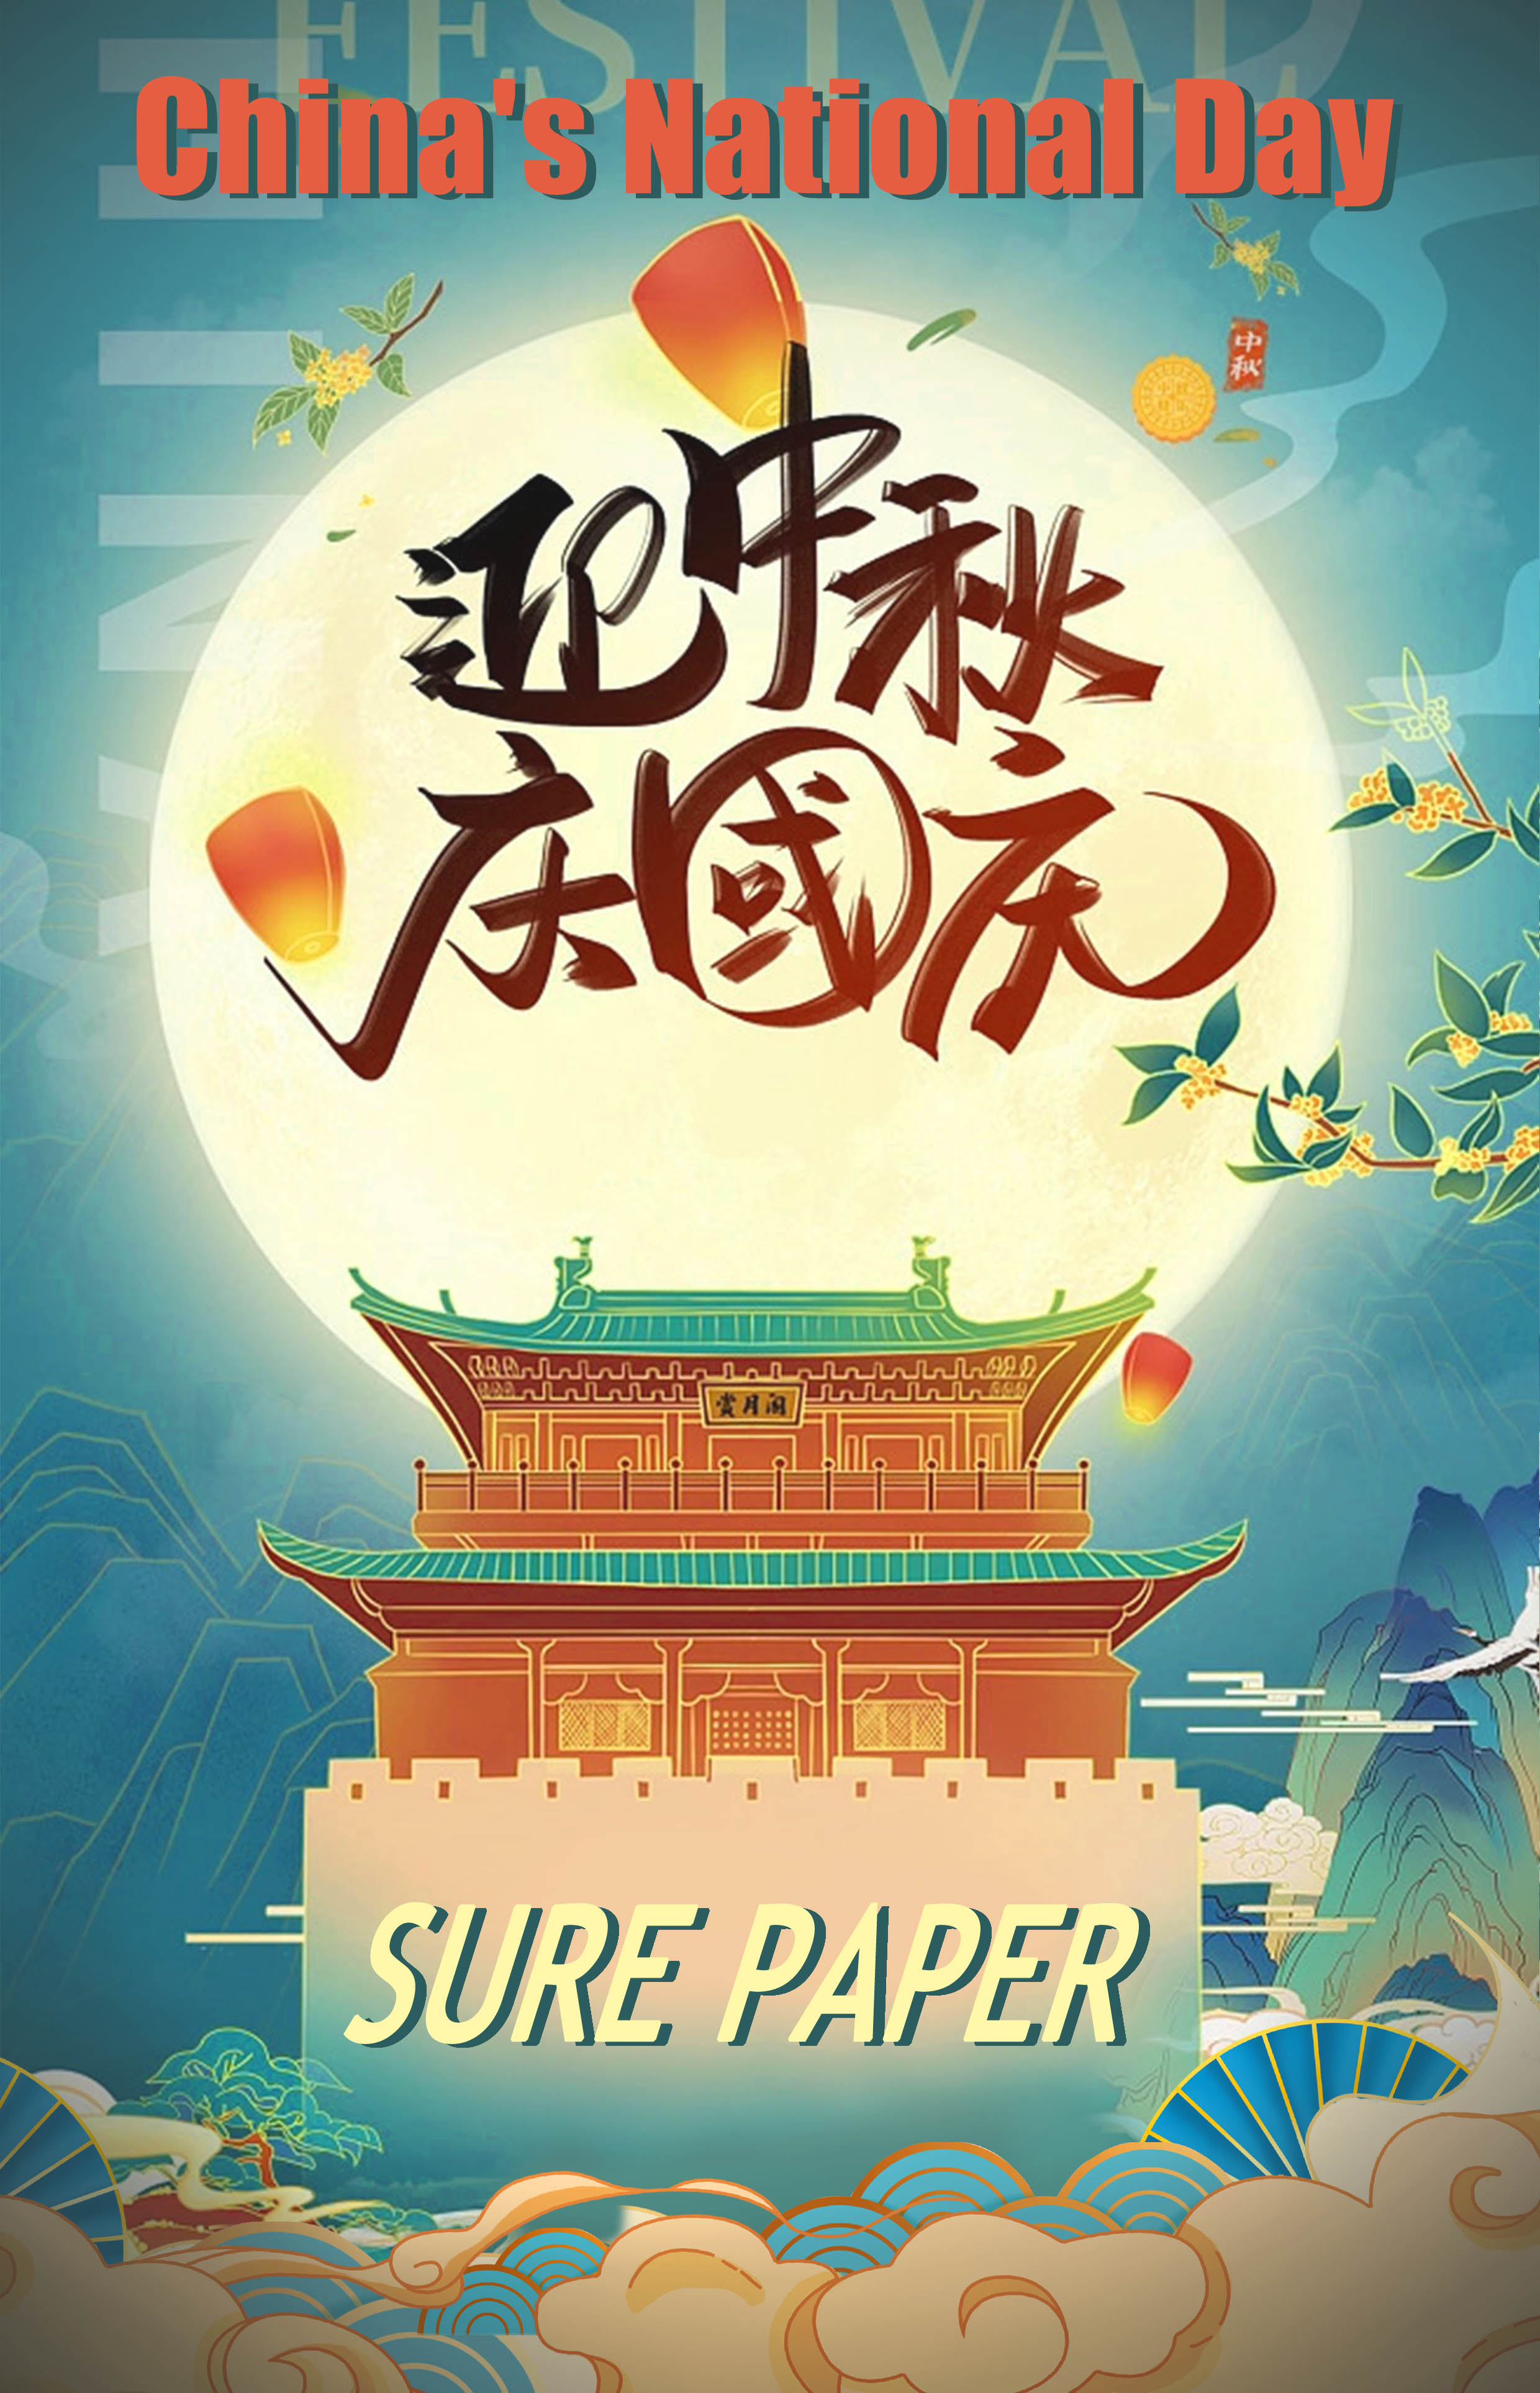 Sviatok polovice jesene a oznámenie o sviatku Národného dňa Číny